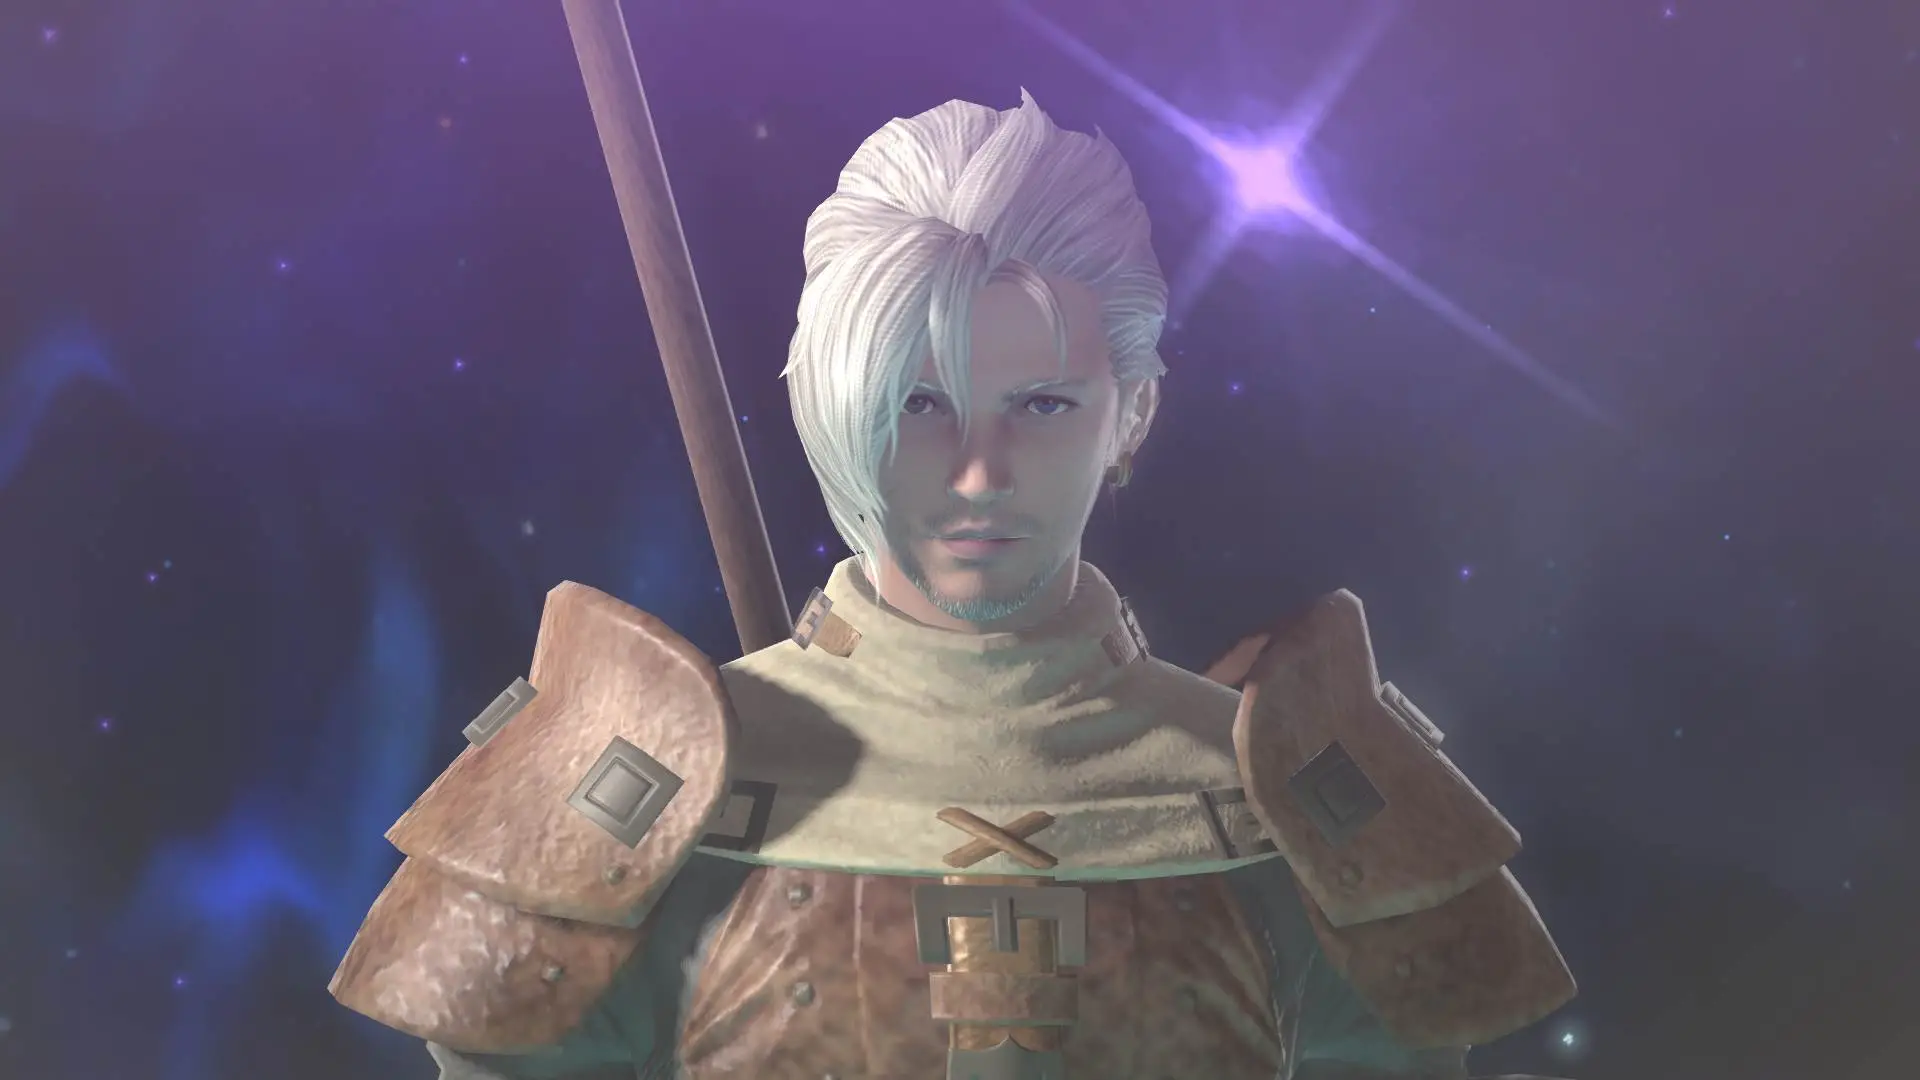 Final Fantasy XIV character-changing Fantasia potion